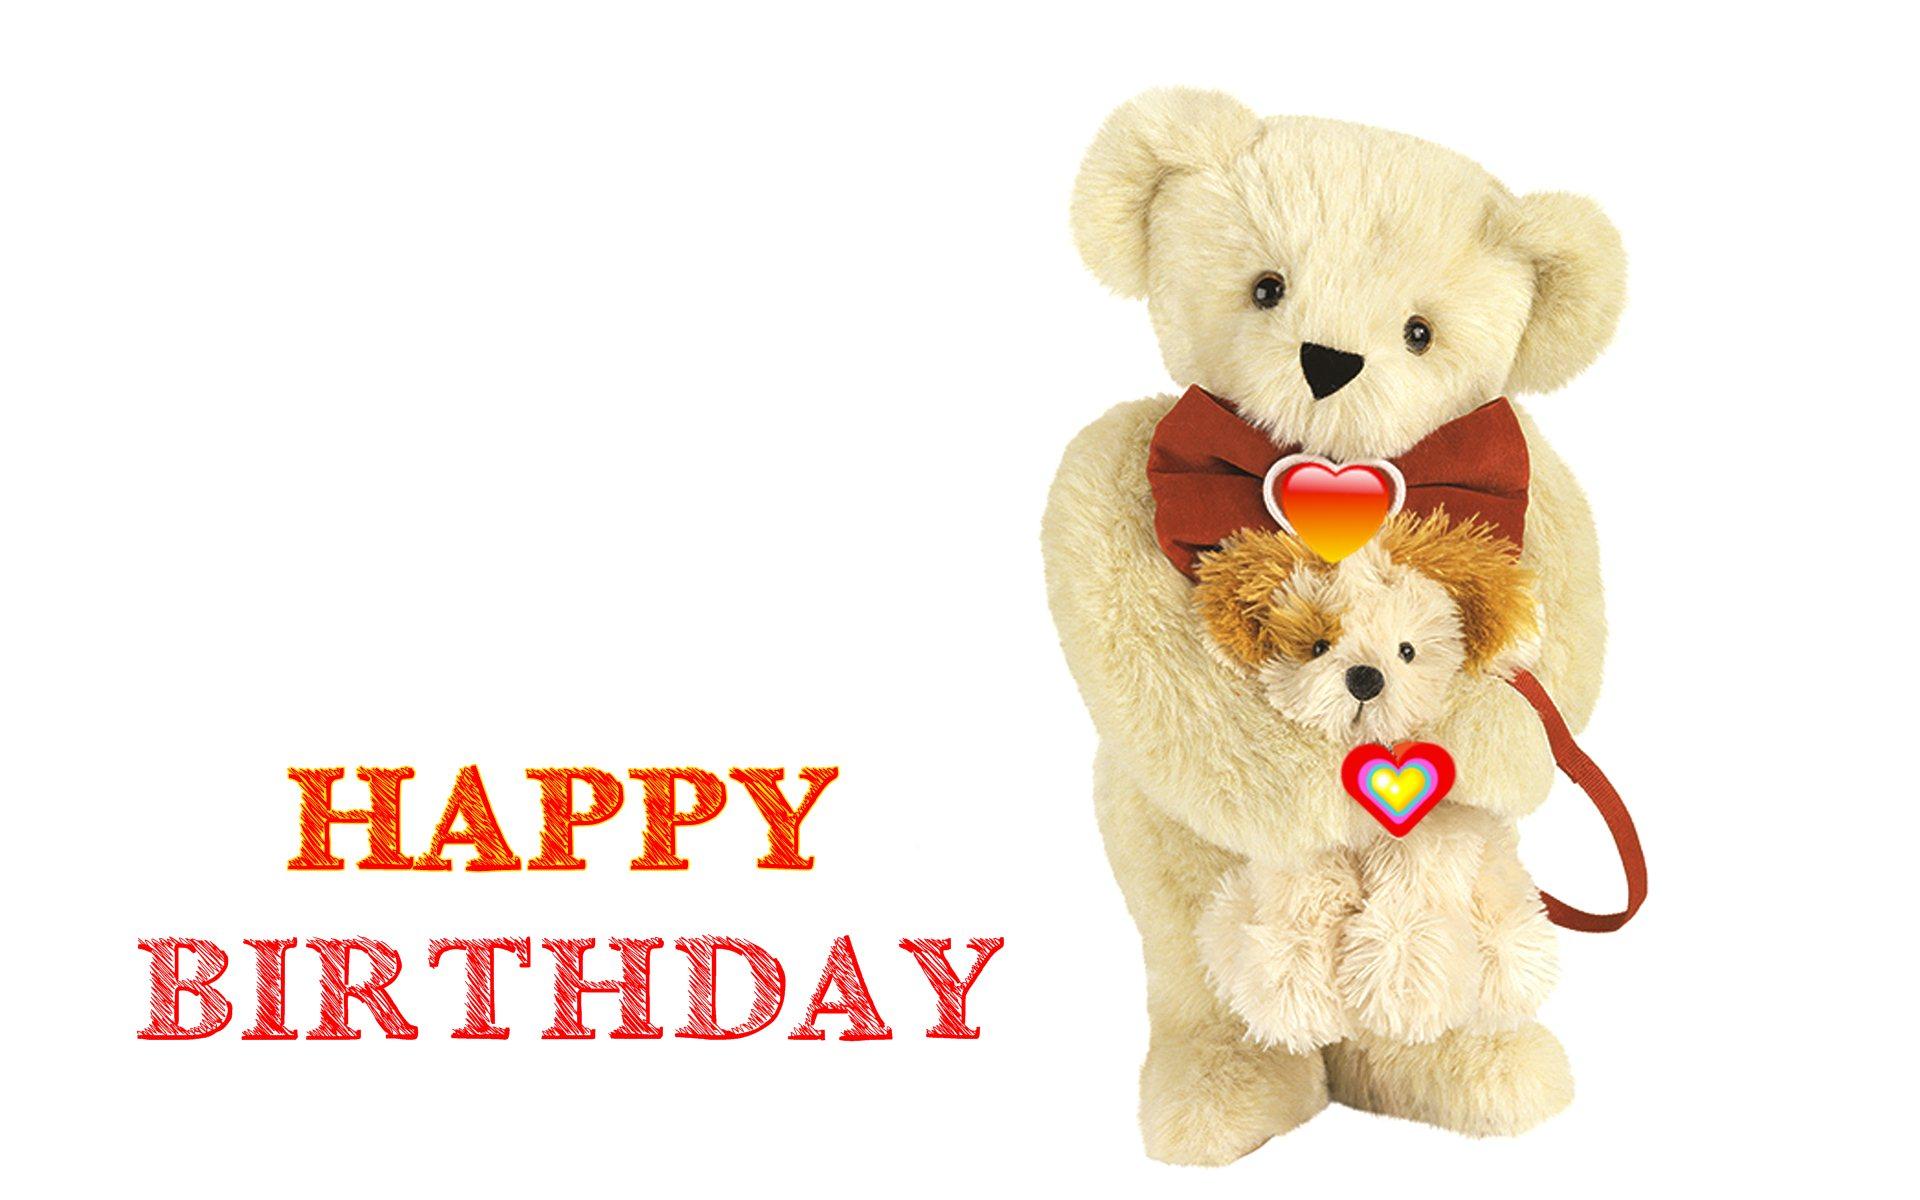 Happy Birthday Cute Teddy Bear Image HD Wallpaper